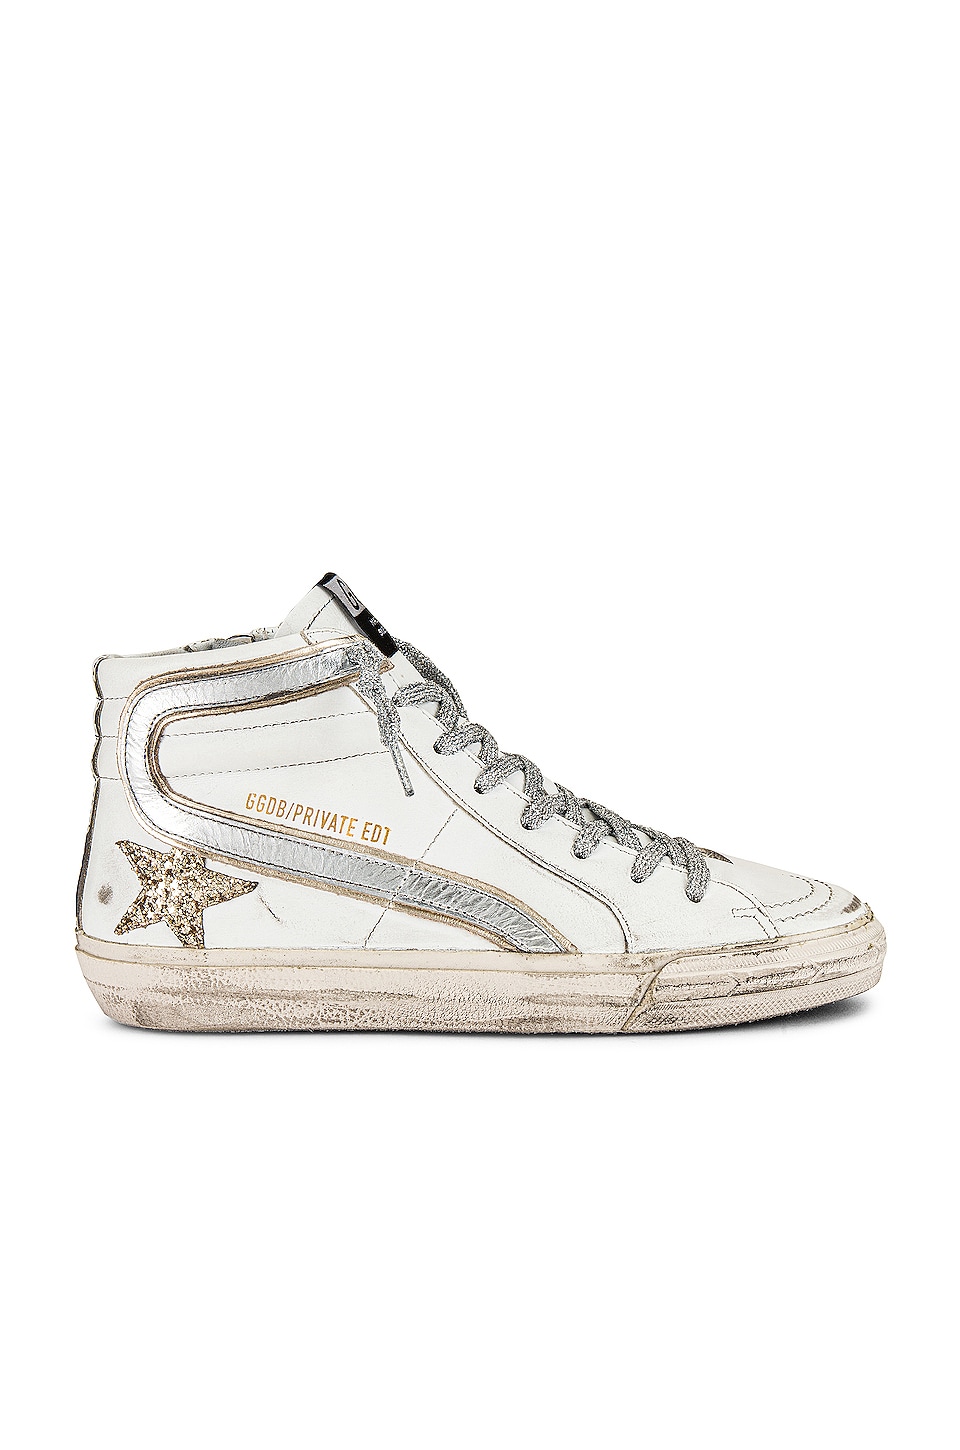 Golden Goose x REVOLVE Slide Sneaker in White & Gold | REVOLVE